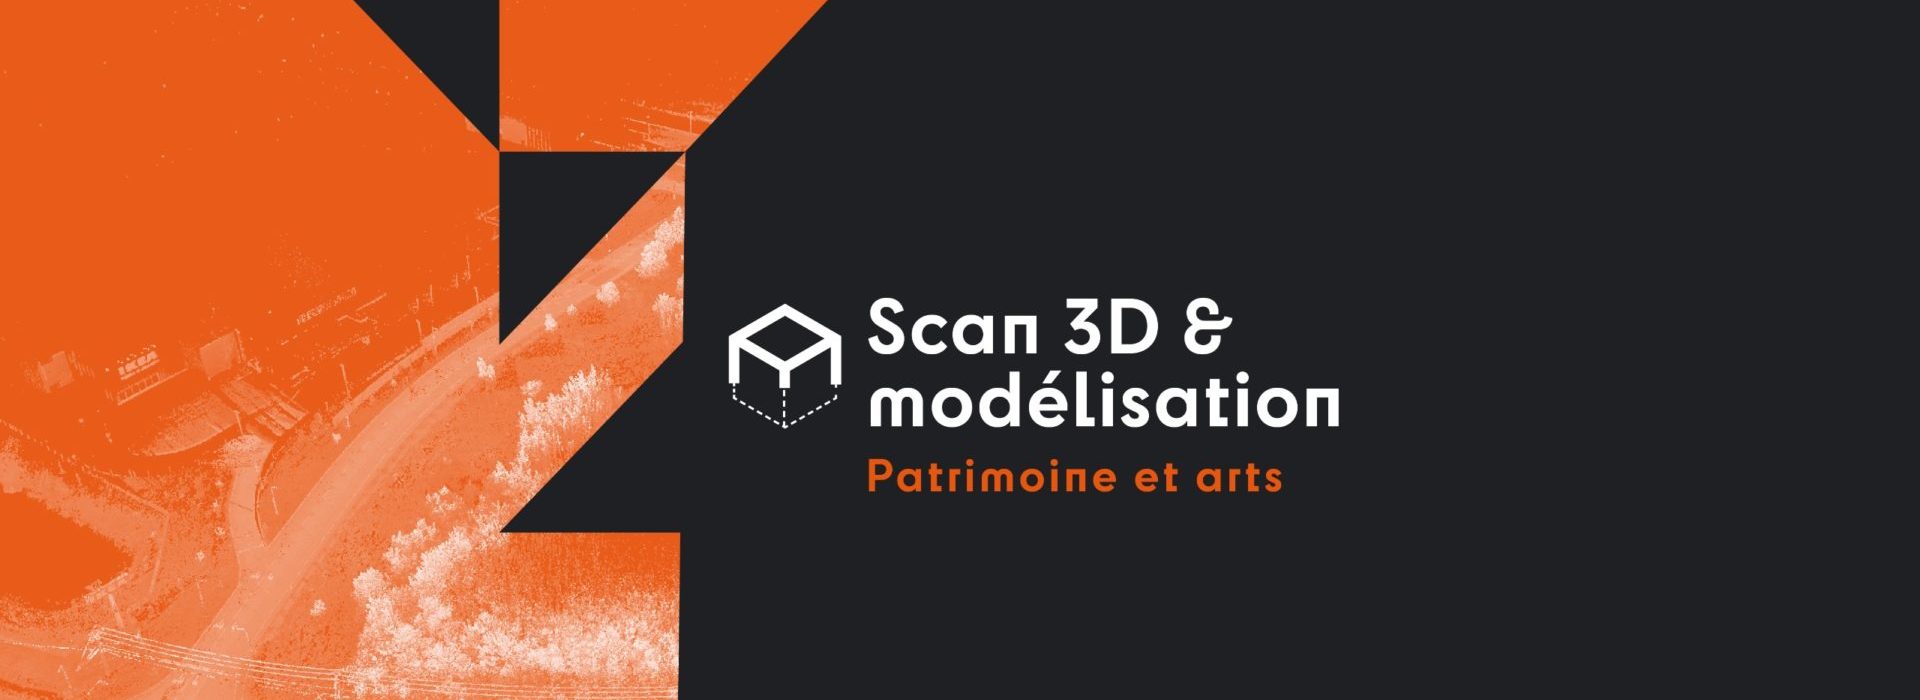 Scan 3D & modélisation - Patrimoine et arts